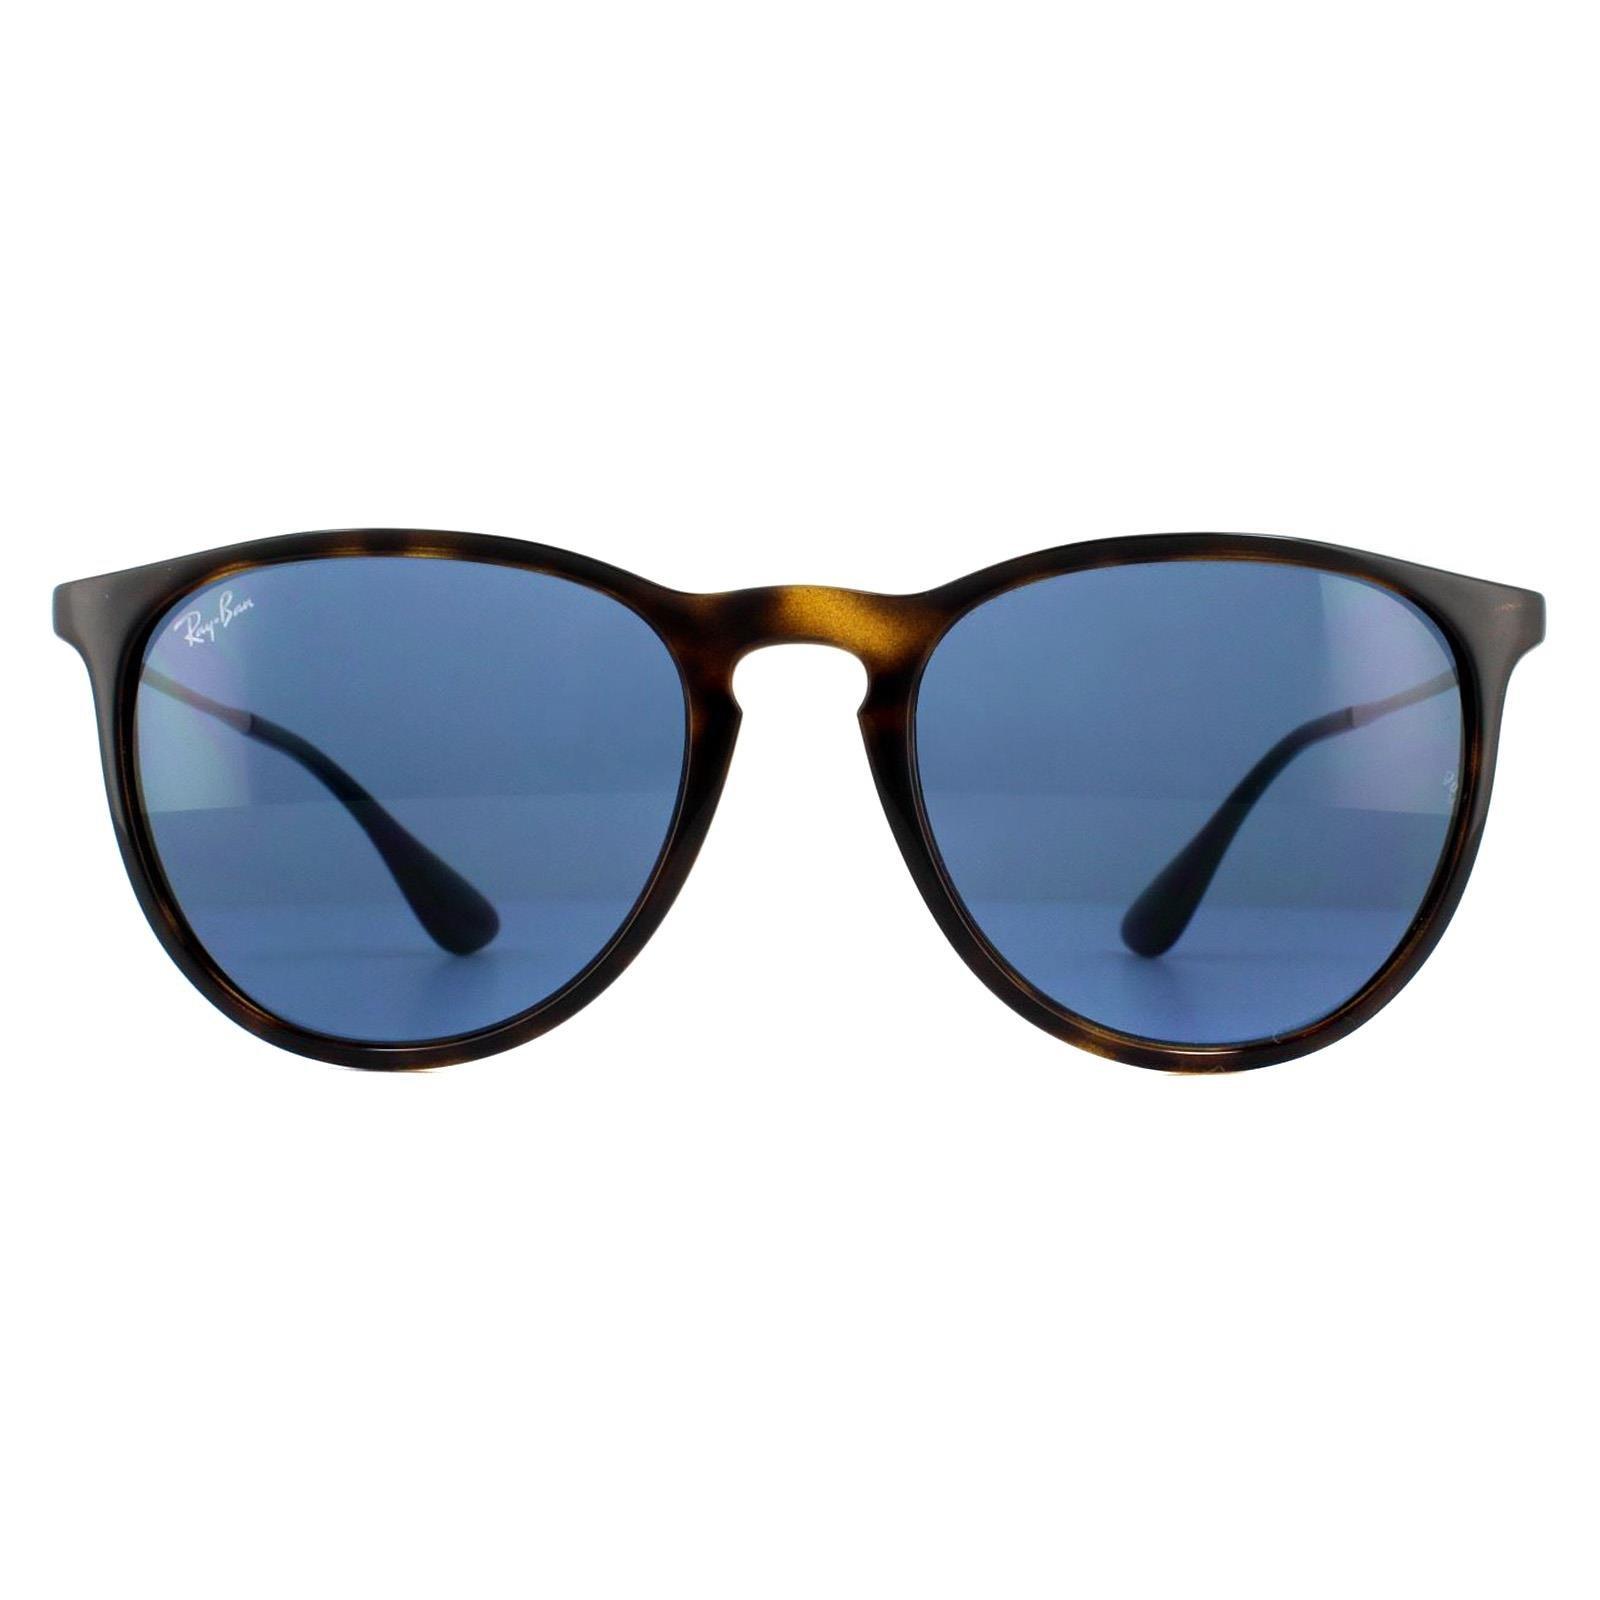 Круглые темно-синие солнцезащитные очки Havana Erika 4171 Ray-Ban, коричневый солнцезащитные очки mark o day corsica dark havana